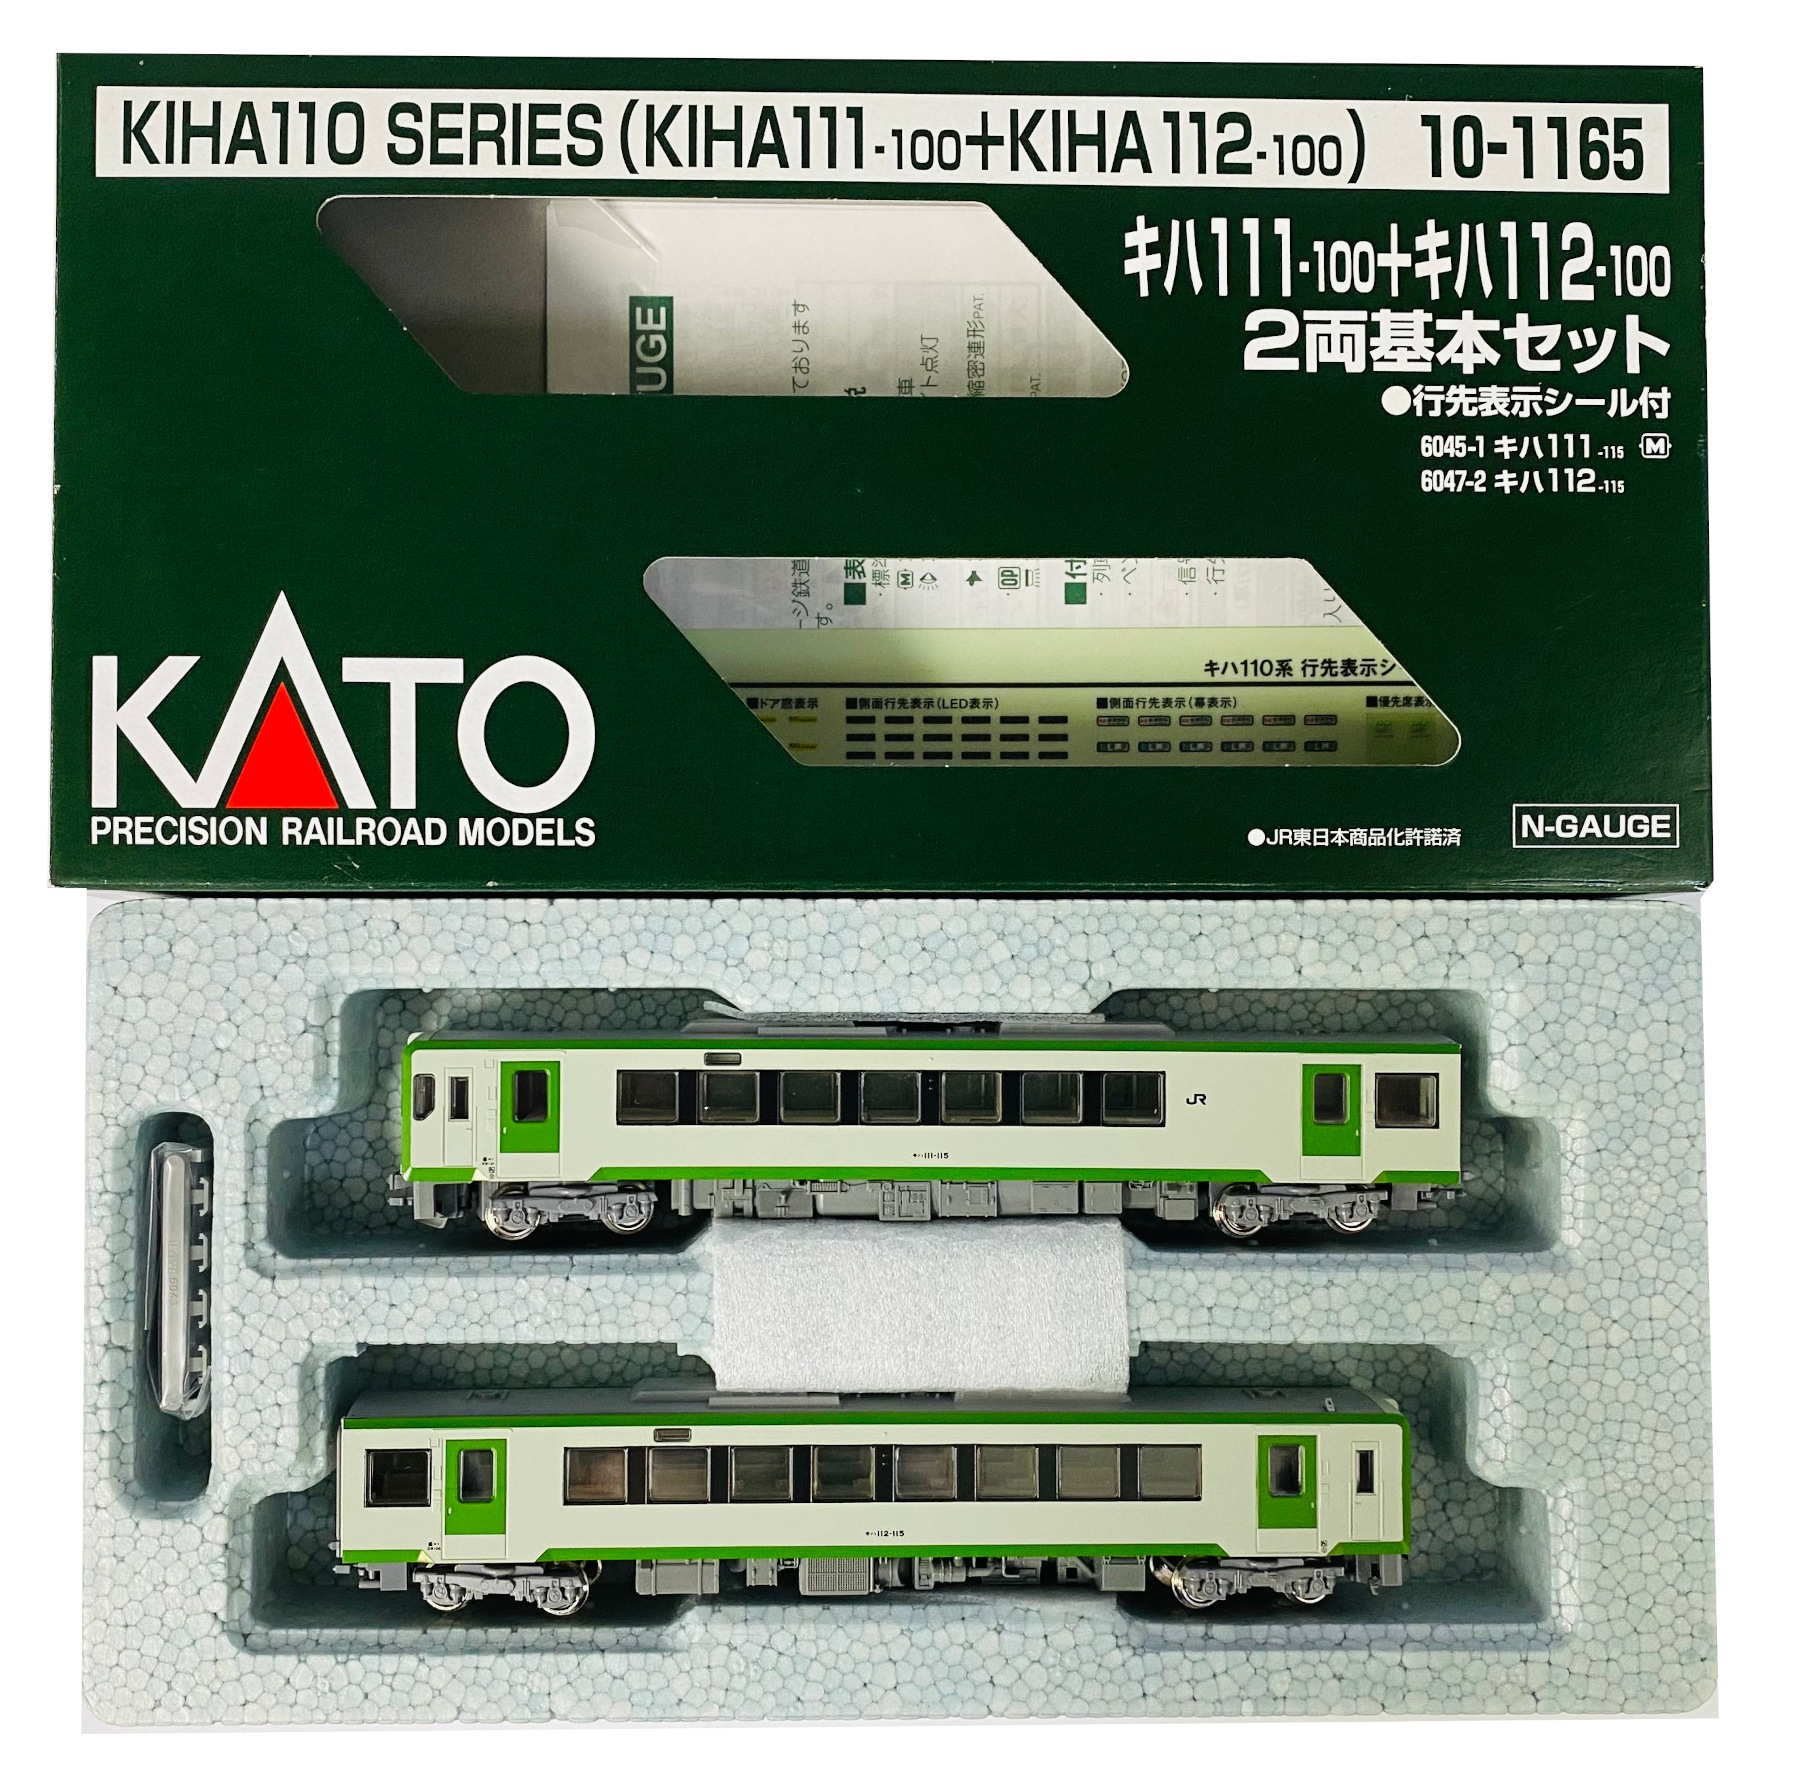 KATO キハ110(M)単品 キハ111+キハ112増結 セット